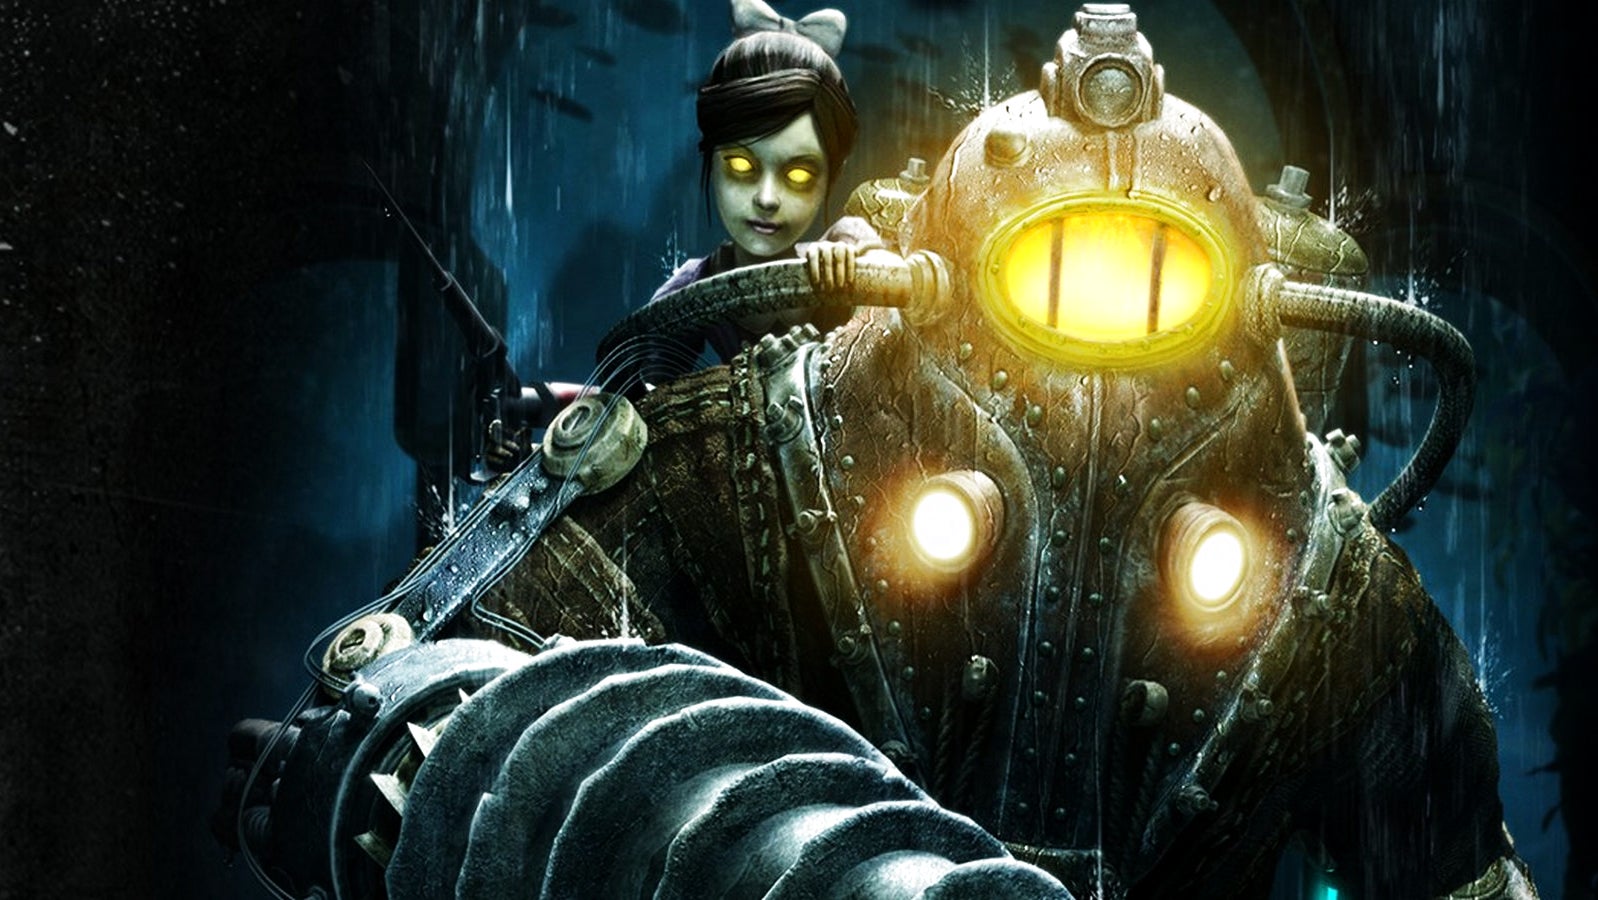 Bilder zu Wo spielt BioShock 4? Anscheinend erste Details zu Schauplatz und Story geleakt